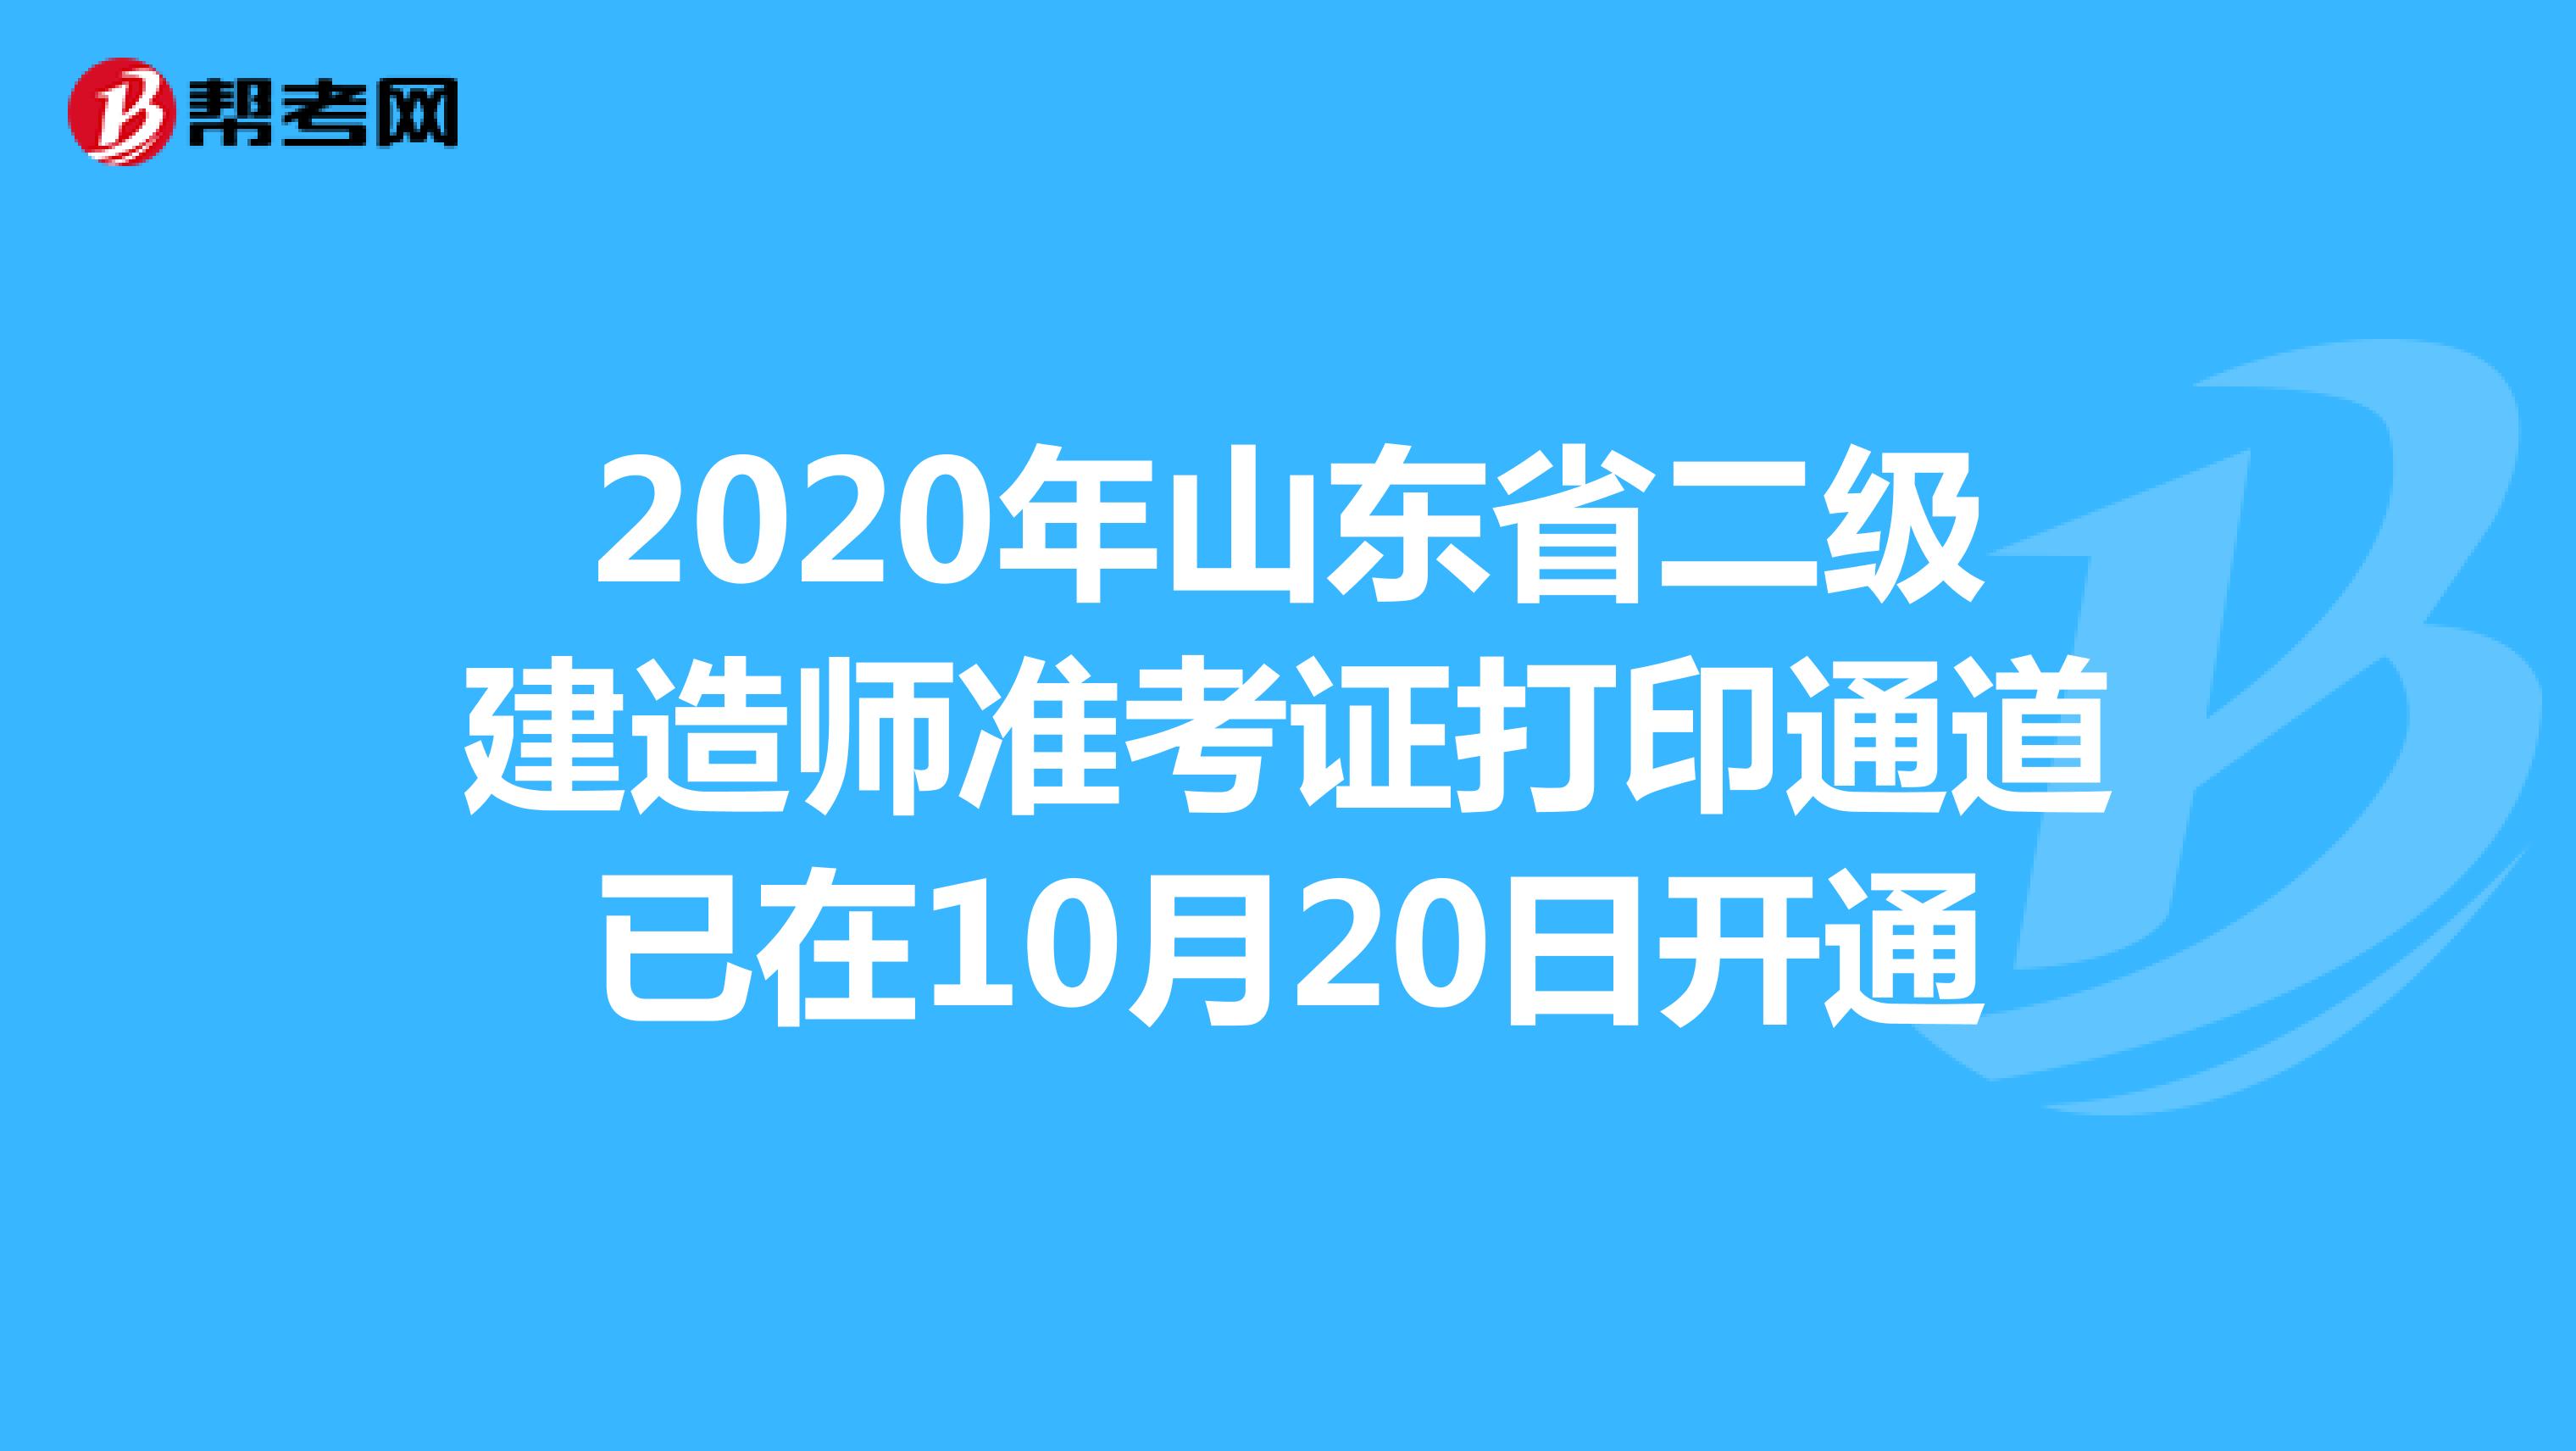 2020年山东省二级建造师准考证打印通道已在10月20日开通